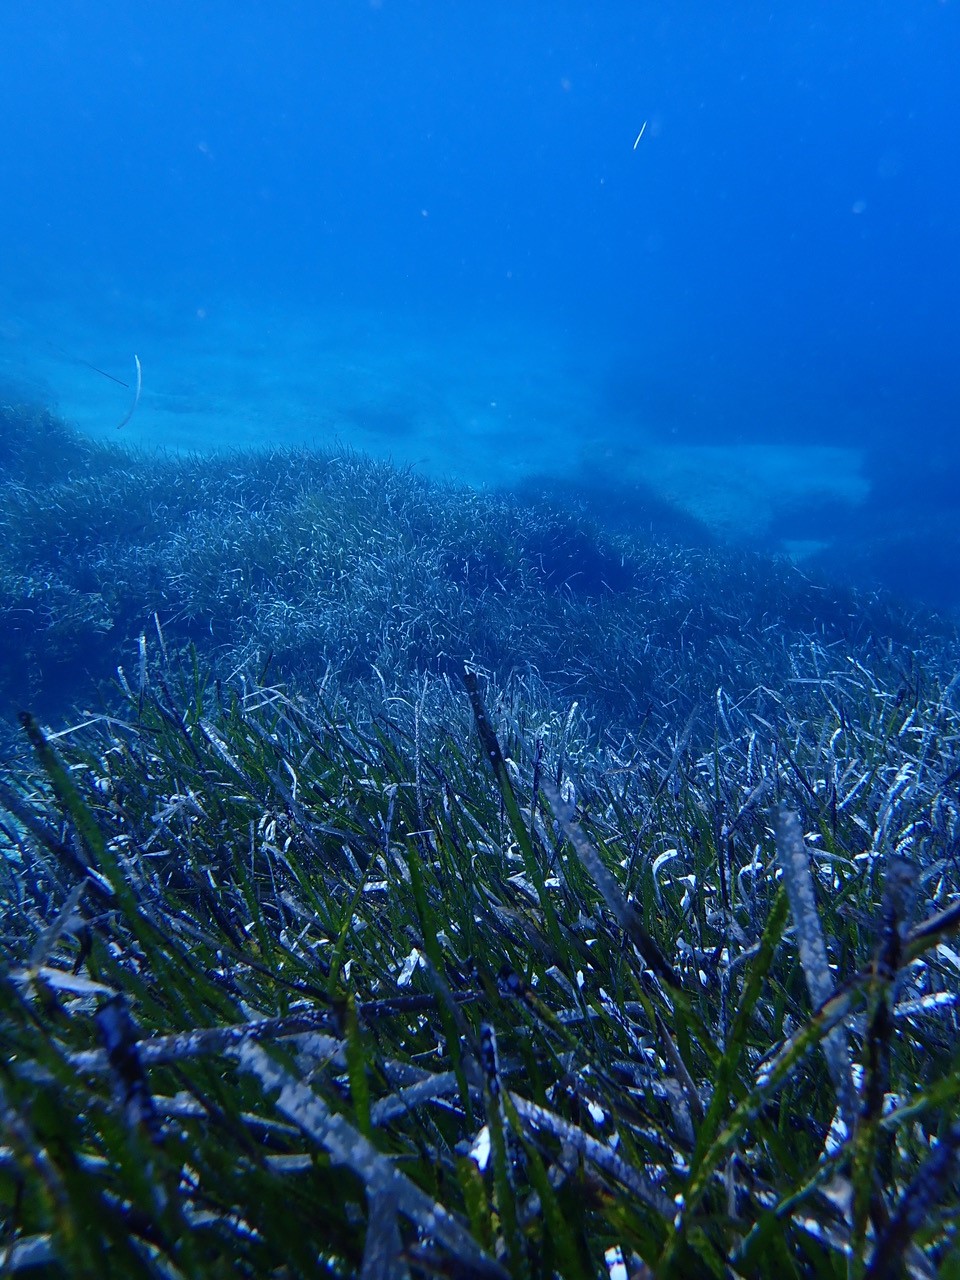 Especies poco profundas como las praderas marinas experimentarán una compresión vertical de su hábitat a medida que aumenten las temperaturas. Imagen: Teresa Alcoverro / CSIC